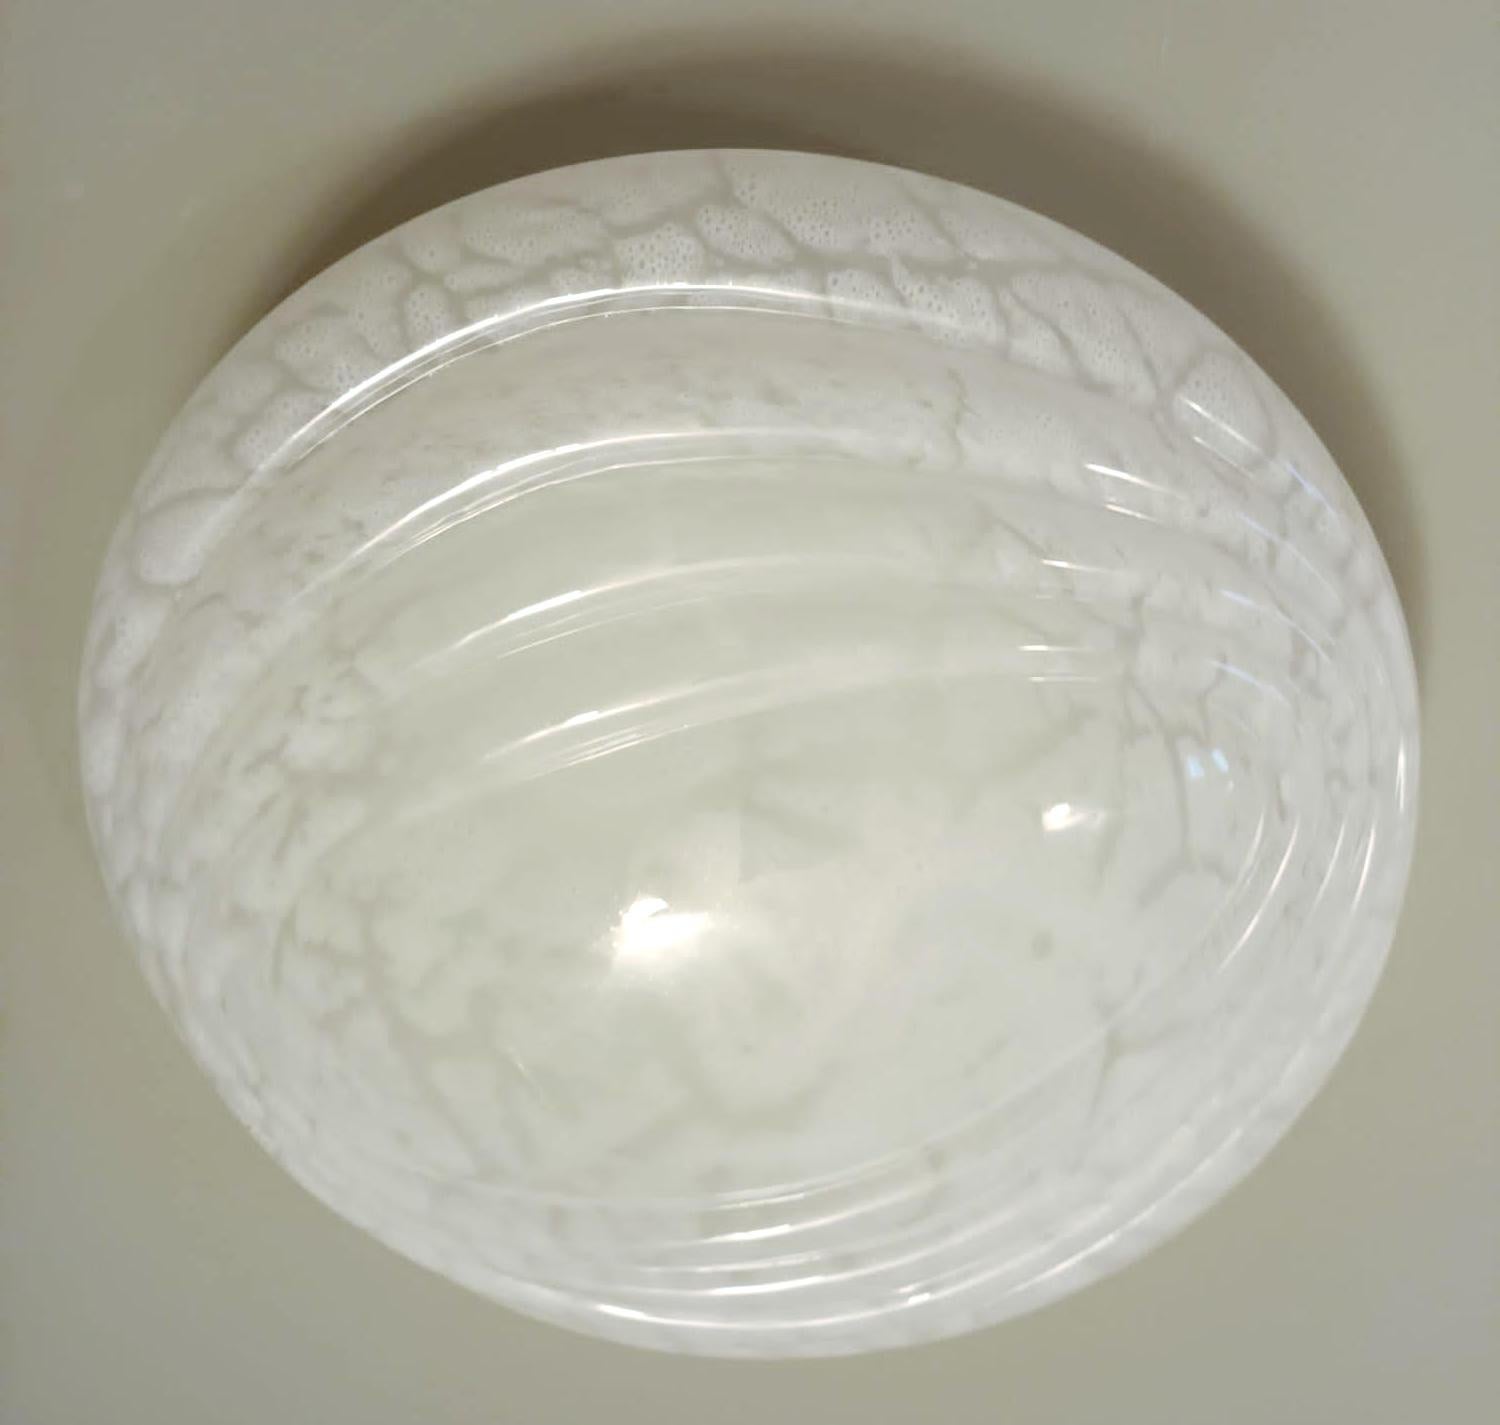 Italienische Unterputz- oder Wandleuchte mit einem einzelnen milchig-weißen gerippten Muranoglasschirm / Made in Italy, ca. 1960er Jahre
Maße: Durchmesser 16,5 Zoll, Höhe 6,5 Zoll
1 Leuchte / Typ E12 oder E14 / max 40W
1 verfügbar auf Lager in